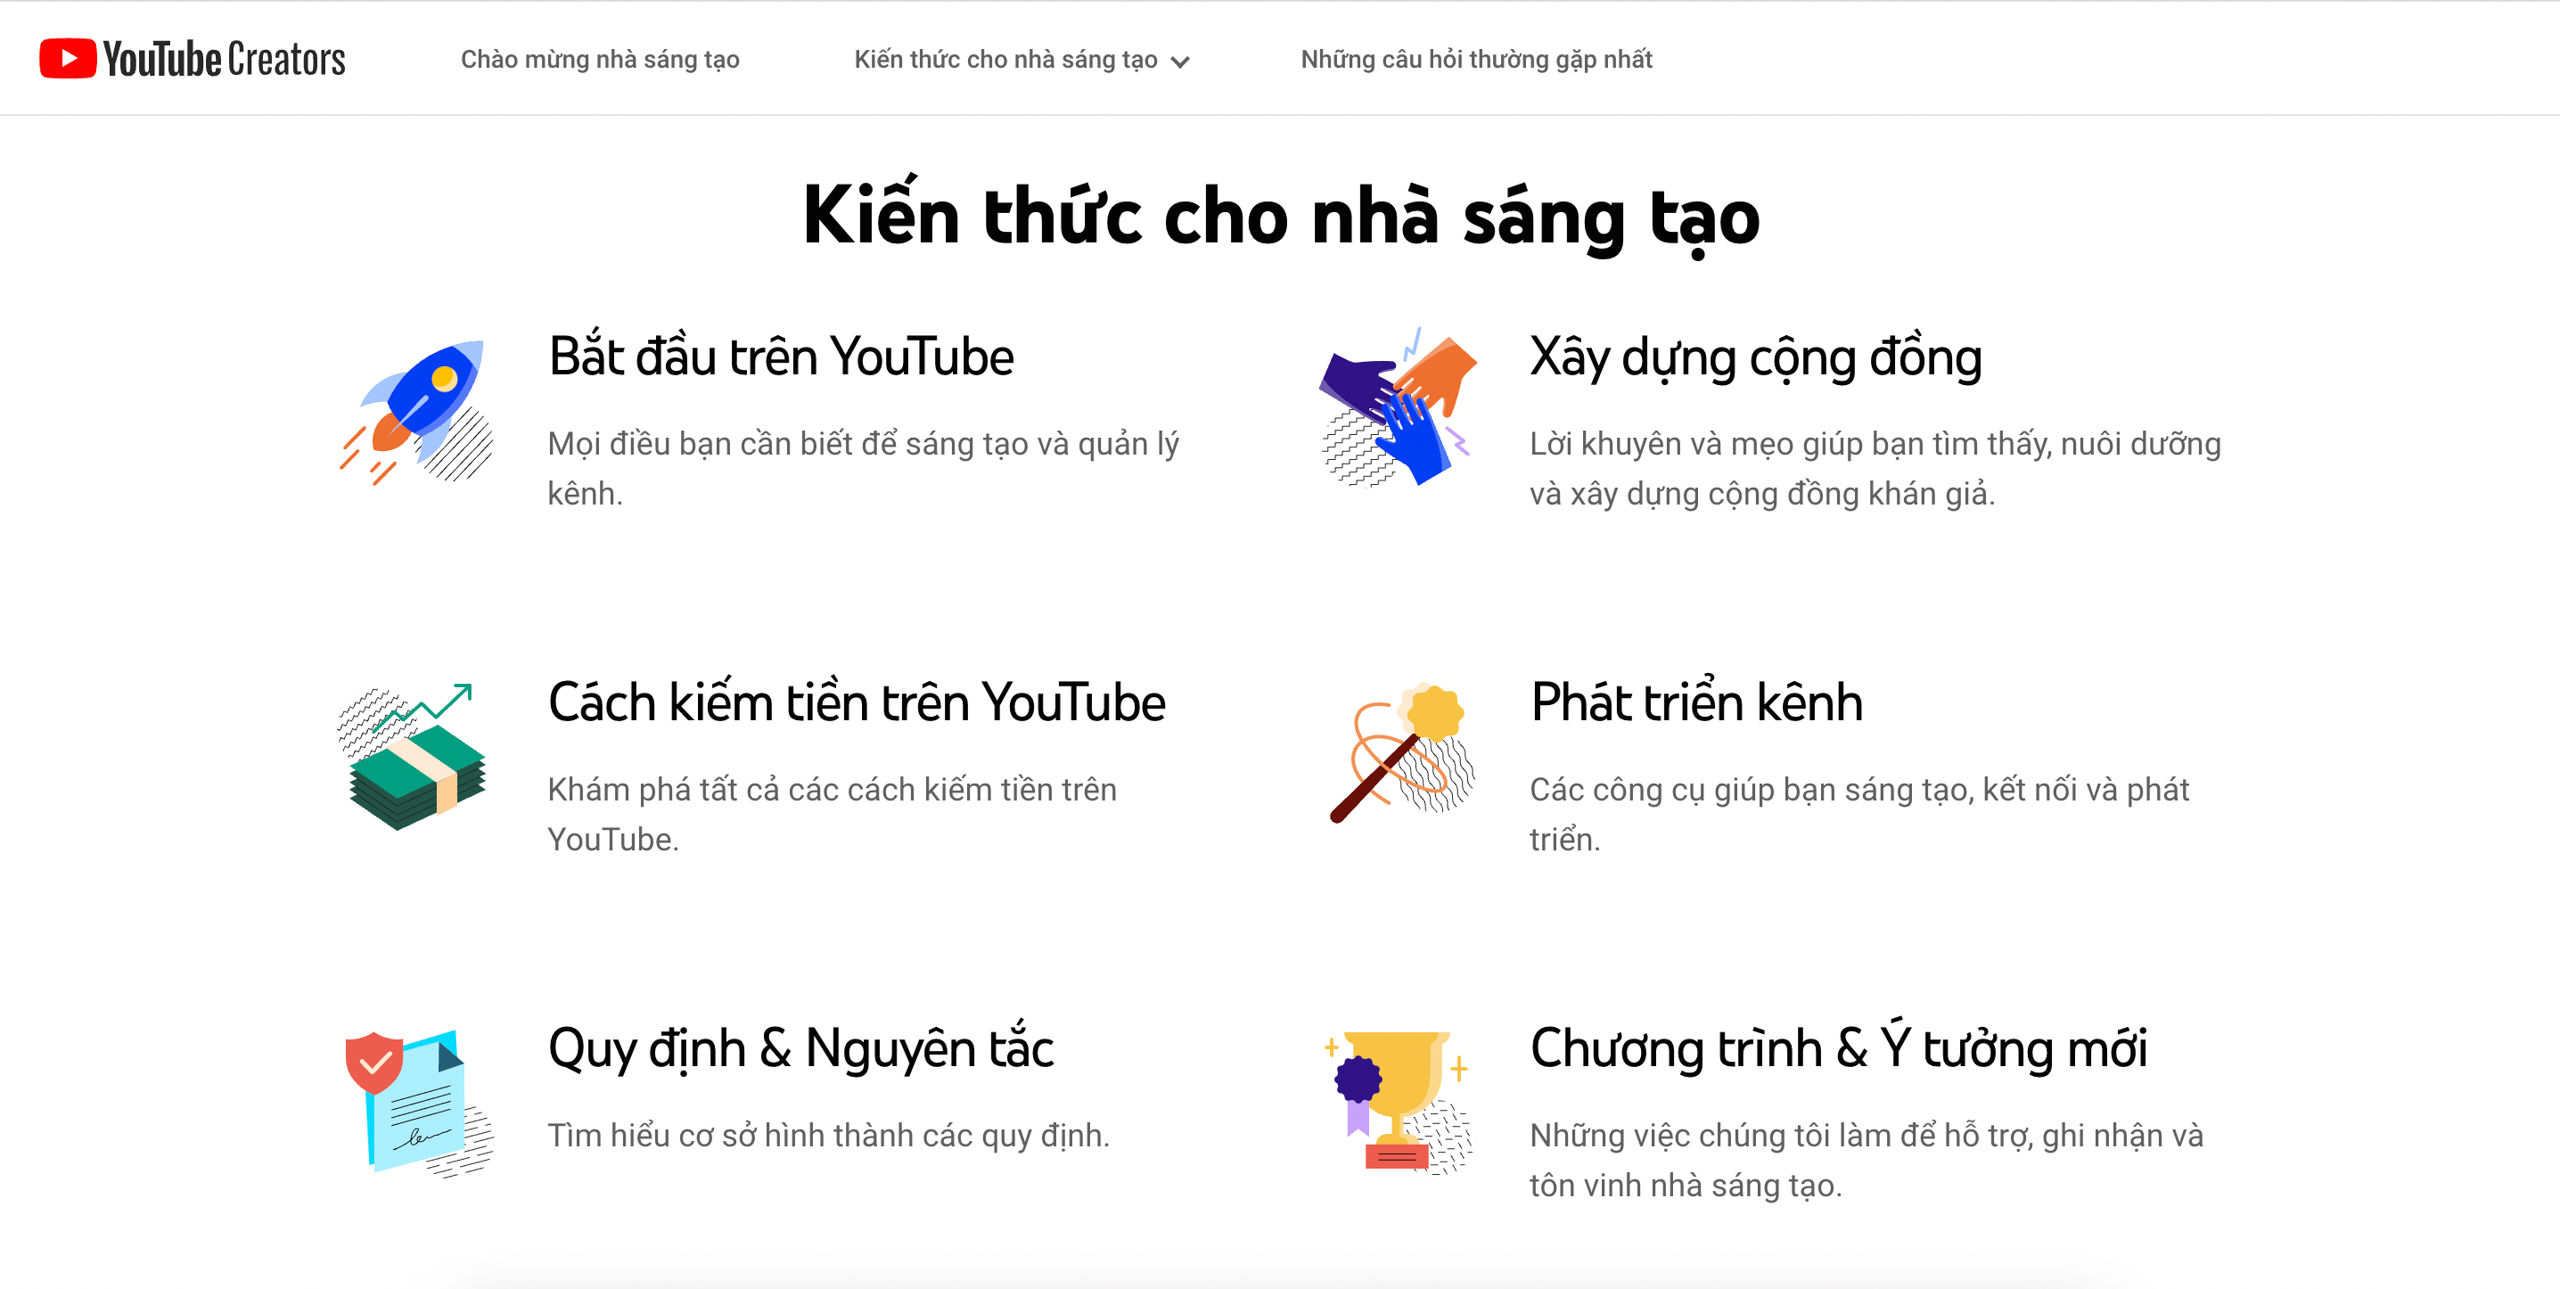 YouTube ra mắt trang web thông tin tiếng Việt hỗ trợ nhà sáng tạo nội dung